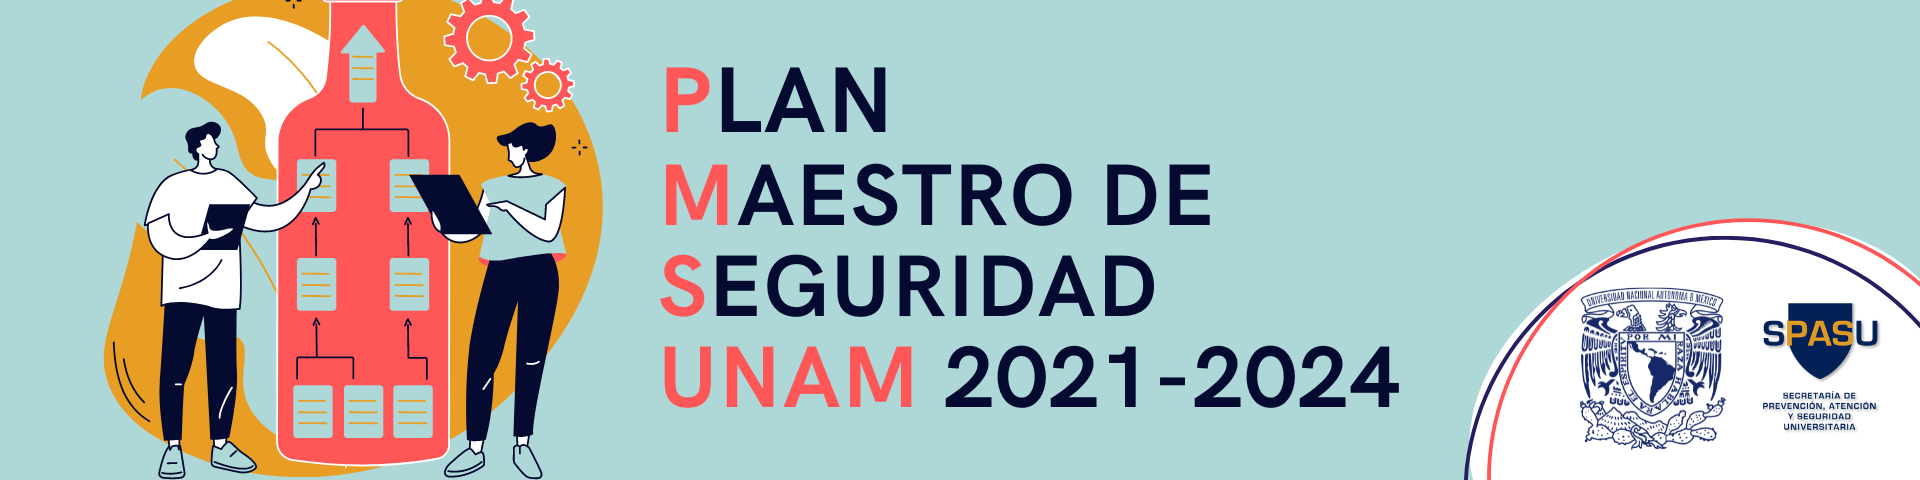 Plan Maestro de Seguridad UNAM 2021-2024: capacitación para CLS y EPU de la UNAM